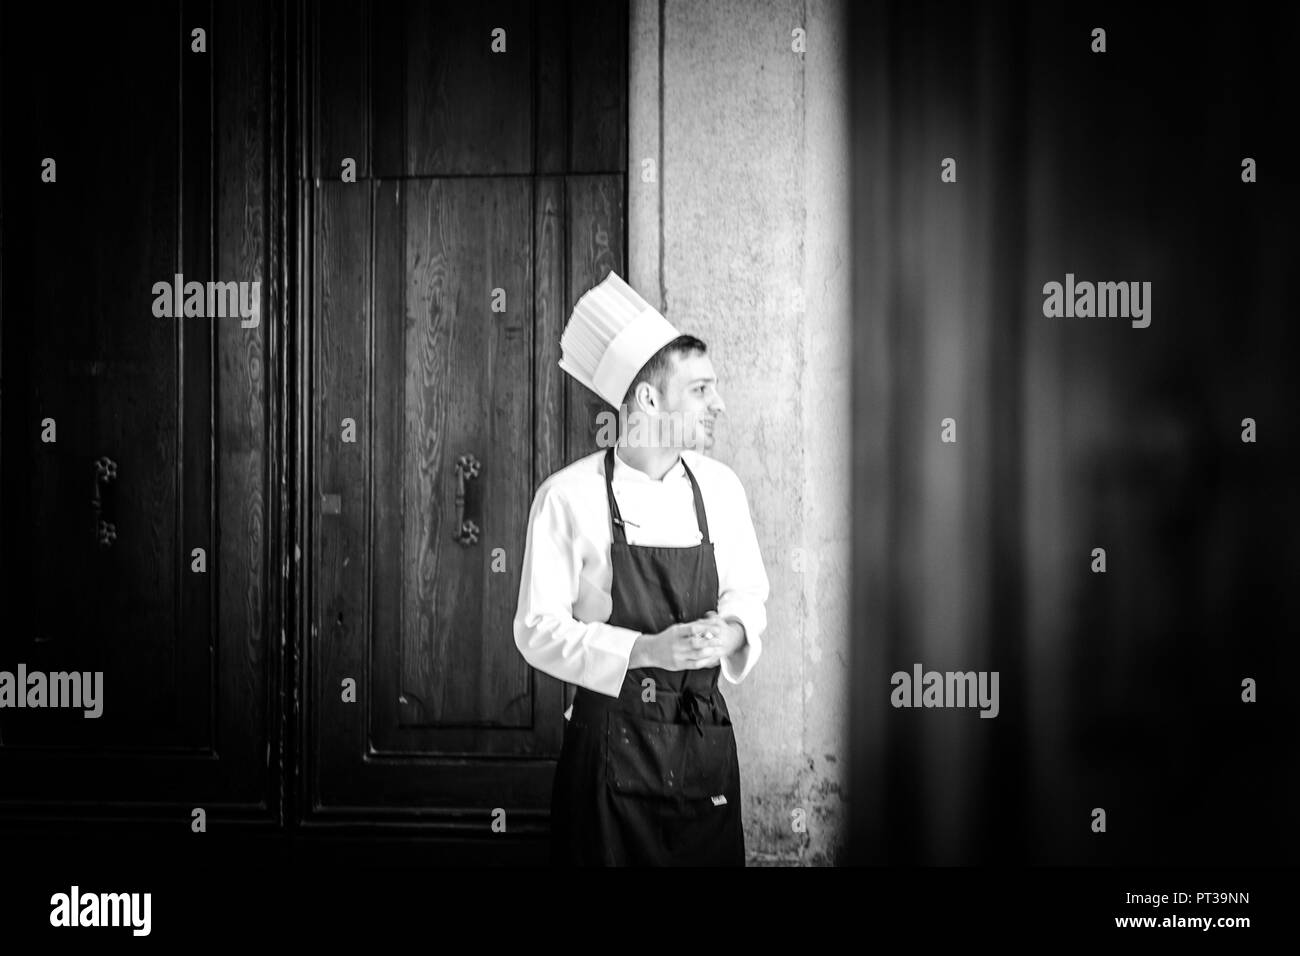 Koch, junger Mann mit Kochmütze und Schürze, lächelnd, Tür im Hintergrund, Schwarz und Weiß Foto Stockfoto